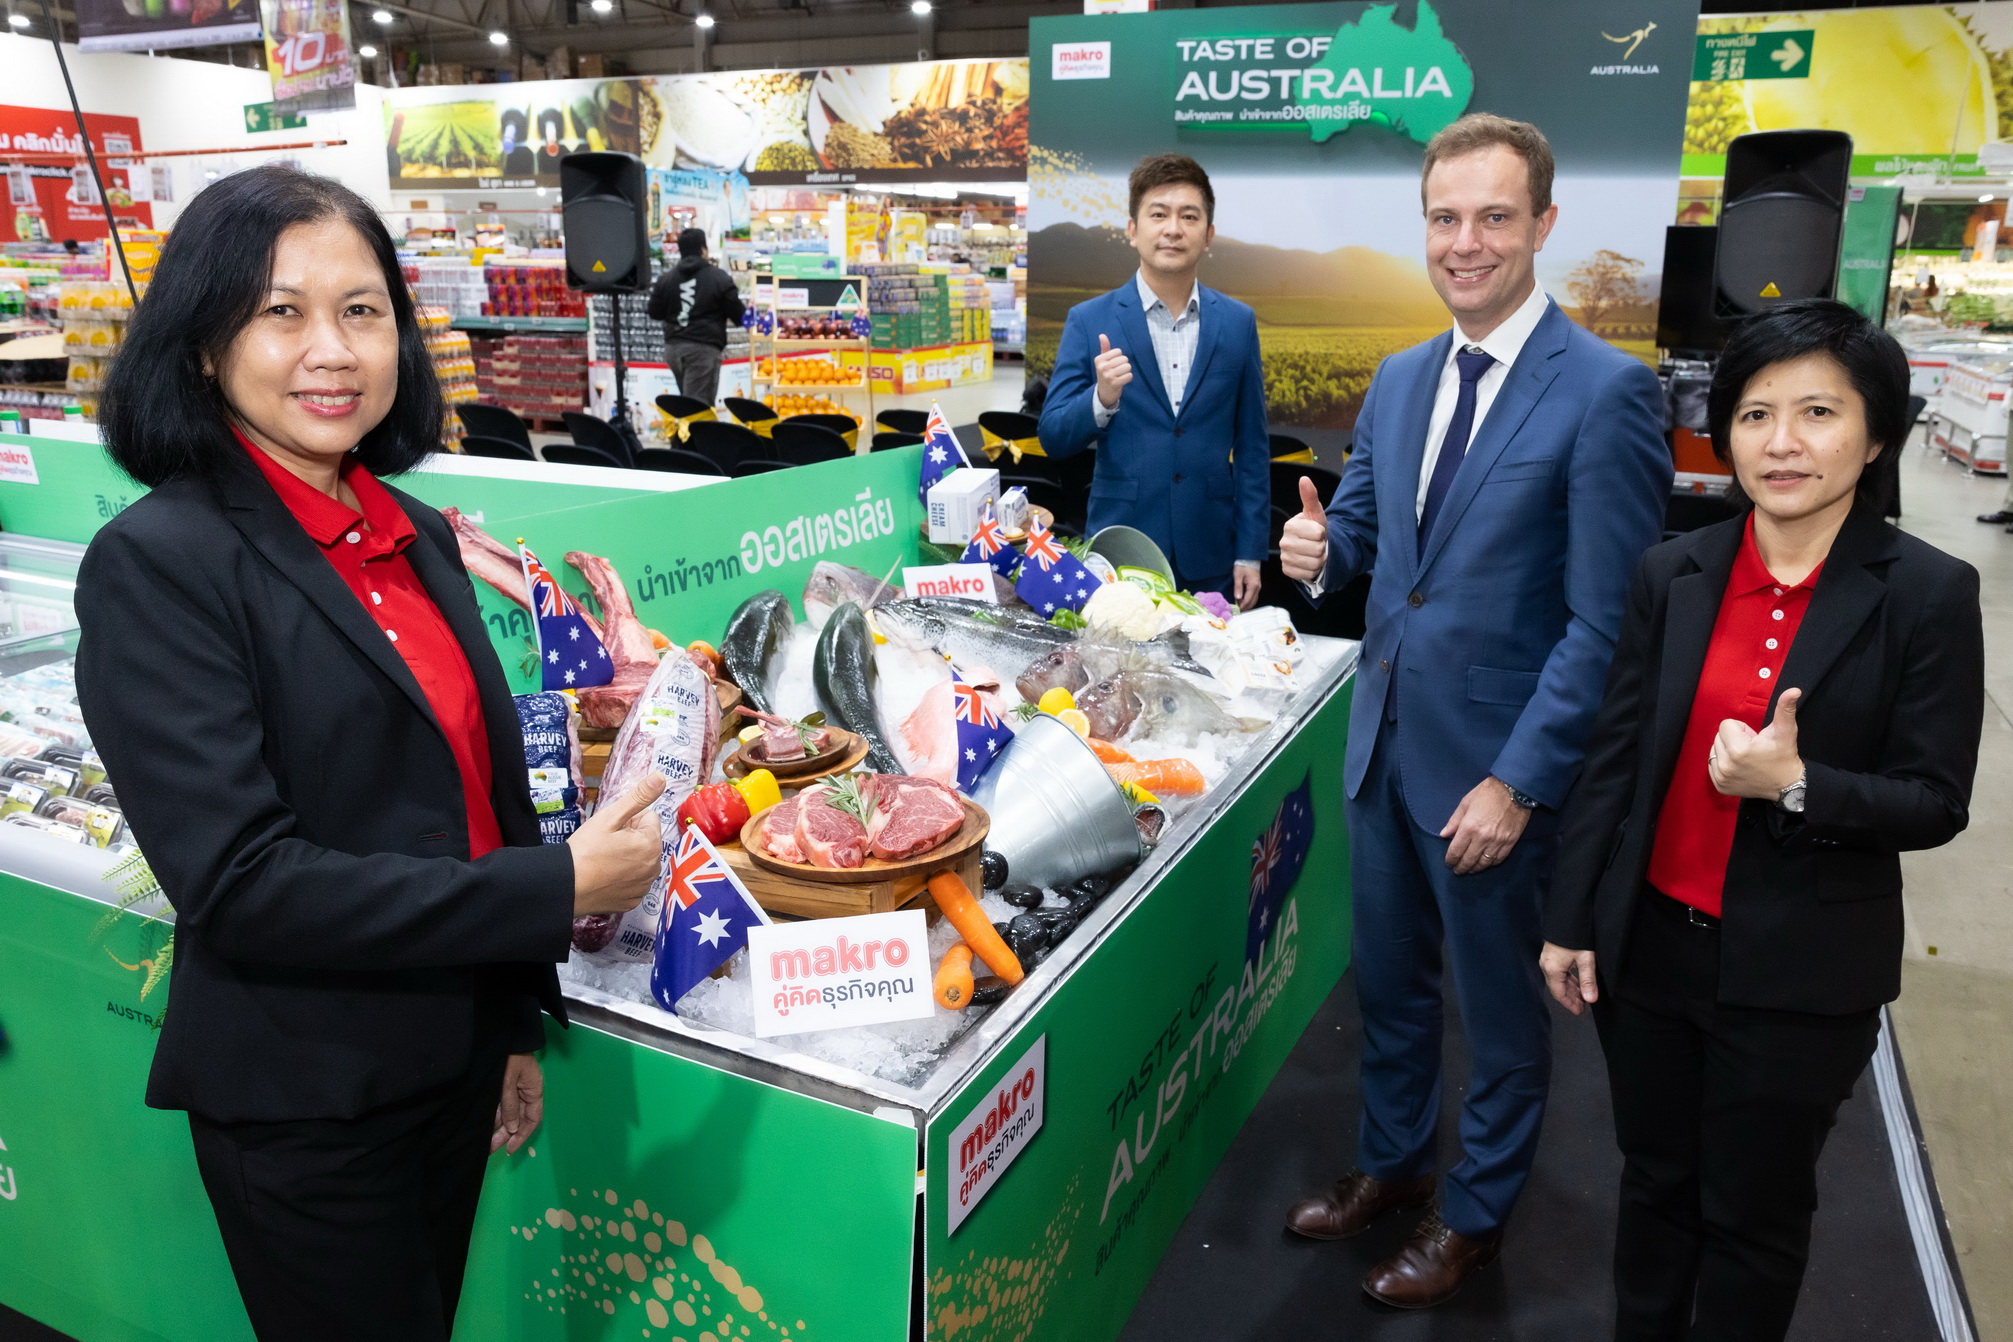 แม็คโคร จัดเทศกาล ‘Taste of Australia’ ตอกย้ำแหล่งรวมวัตถุดิบจากทั่วโลก ขนทัพสินค้าคุณภาพดี เอาใจนักชิม - ผู้ประกอบการ รองรับธุรกิจอาหารฟื้นตัว